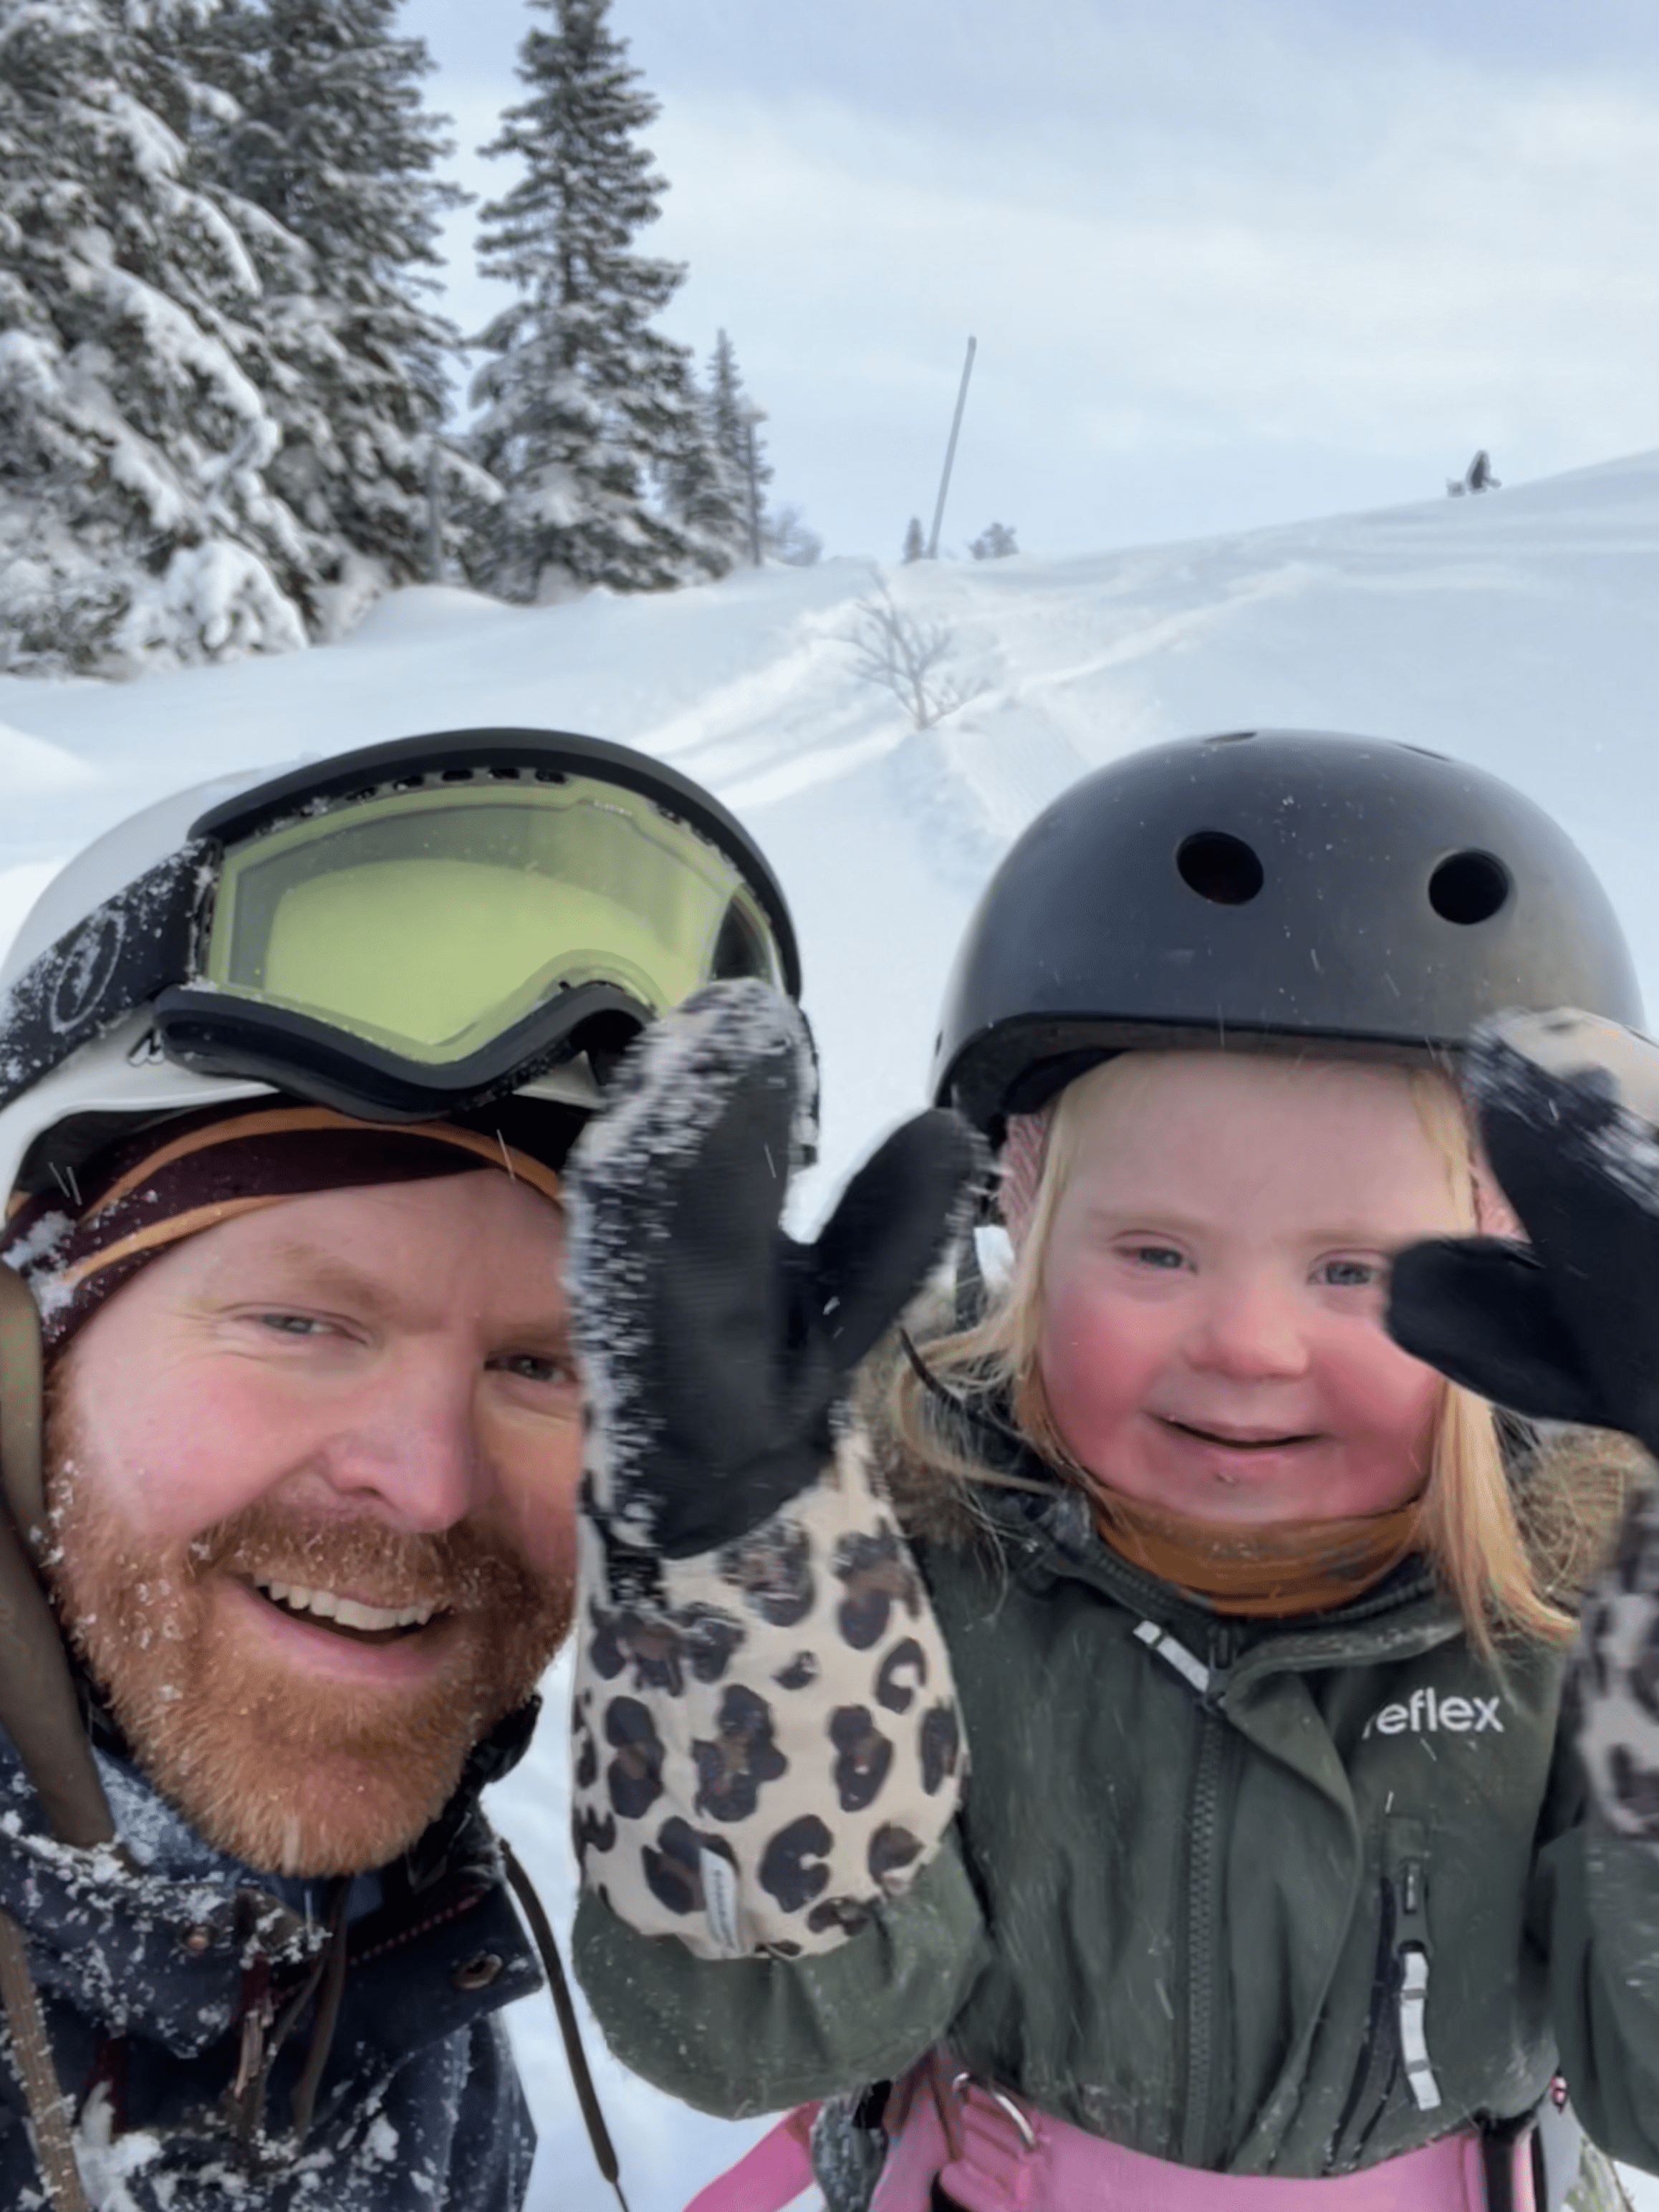 far og datter med downs syndrom i slalombakken